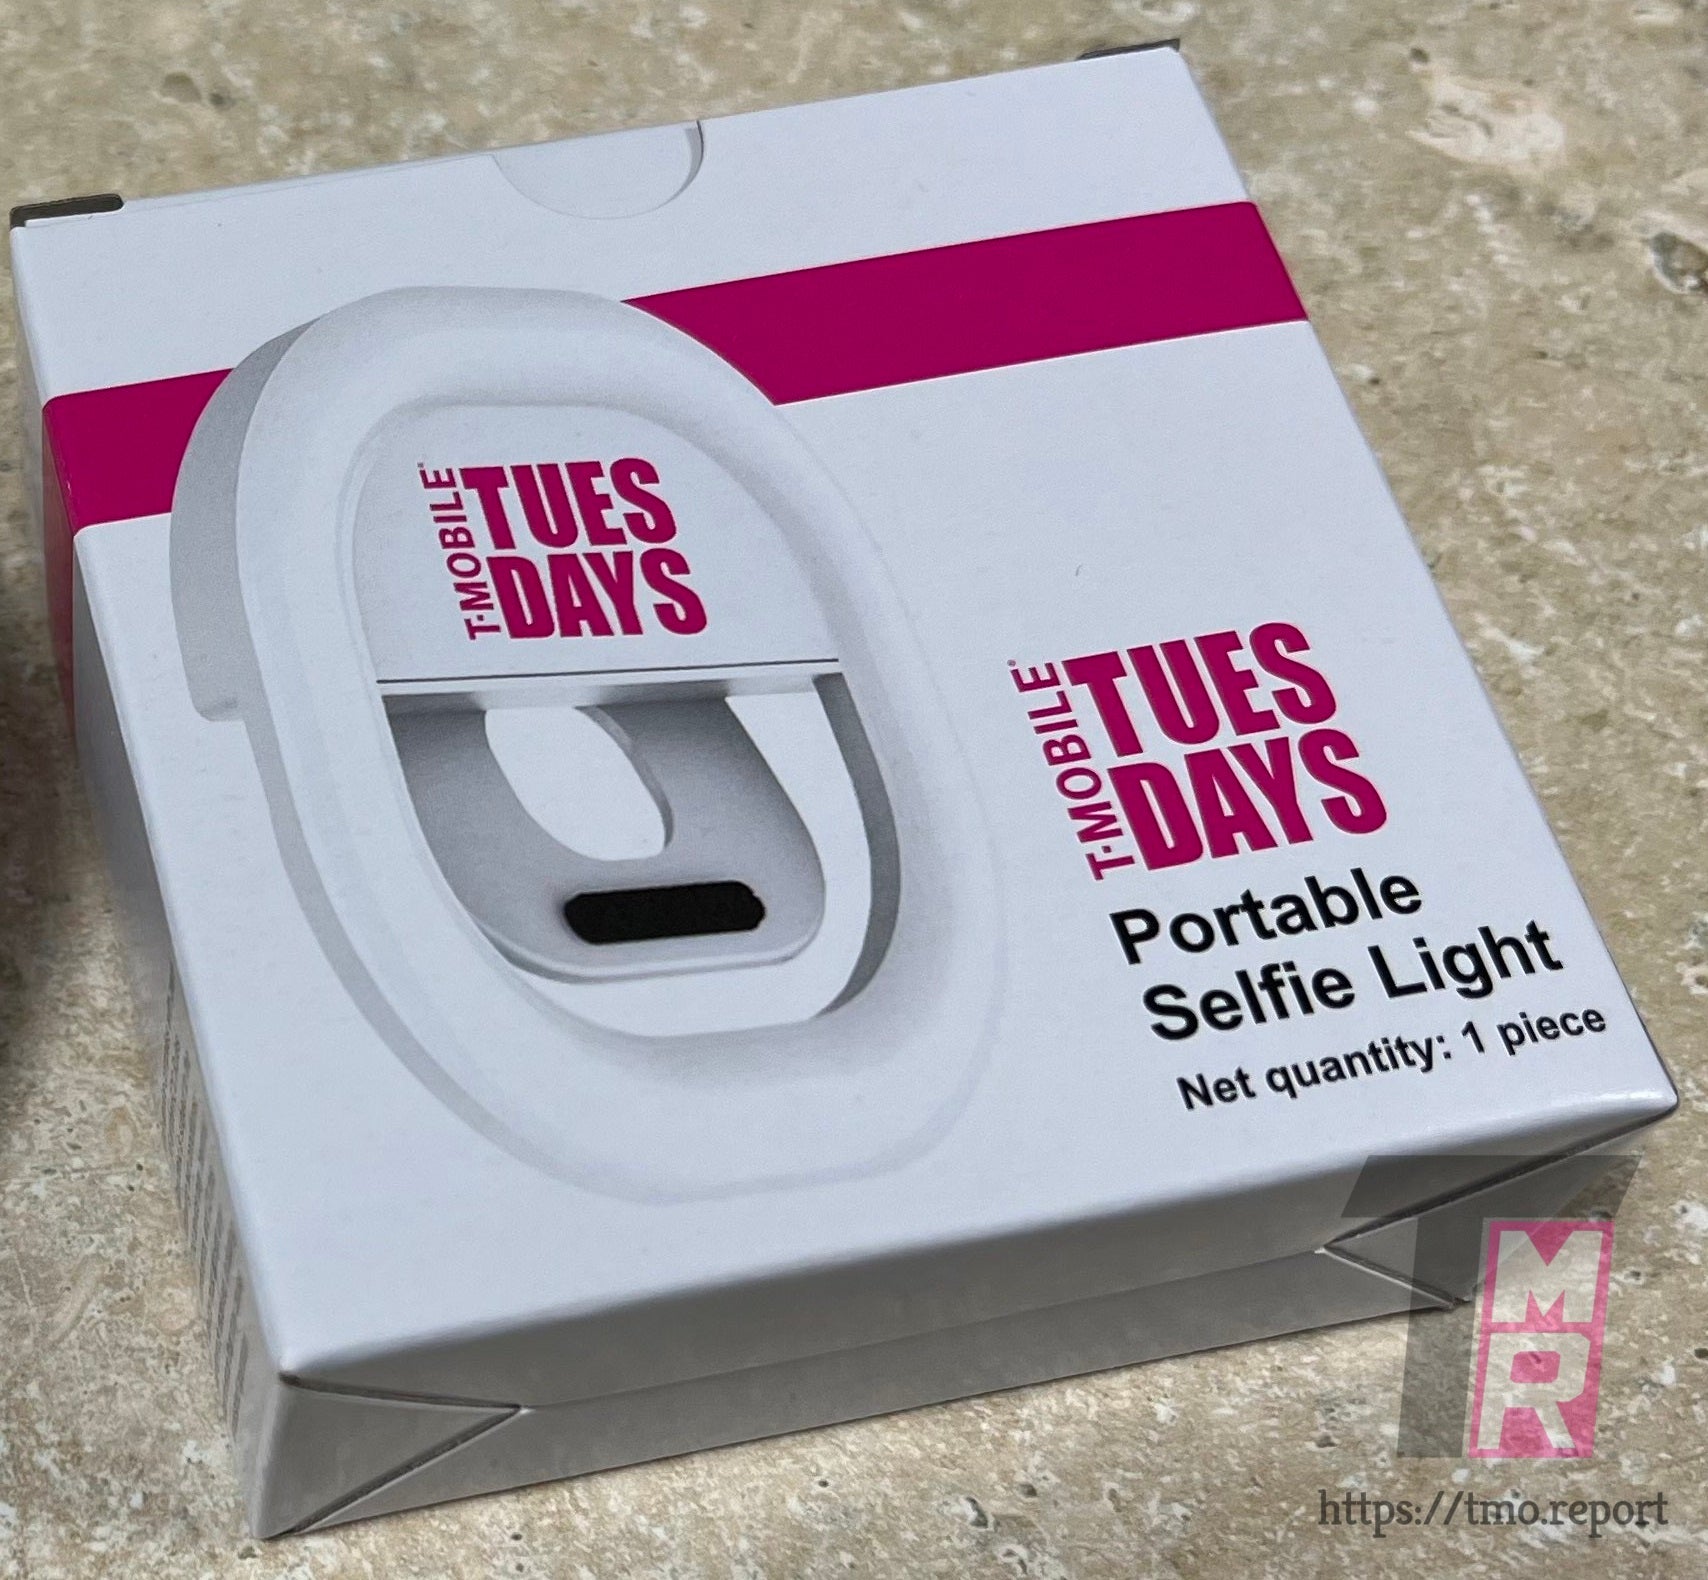 A T-Mobile em breve dará um Portable Selfie Light gratuito para os clientes como parte de seu programa de recompensas - os clientes da T-Mobile em breve receberão um presente útil por meio do programa de recompensas semanais da operadora